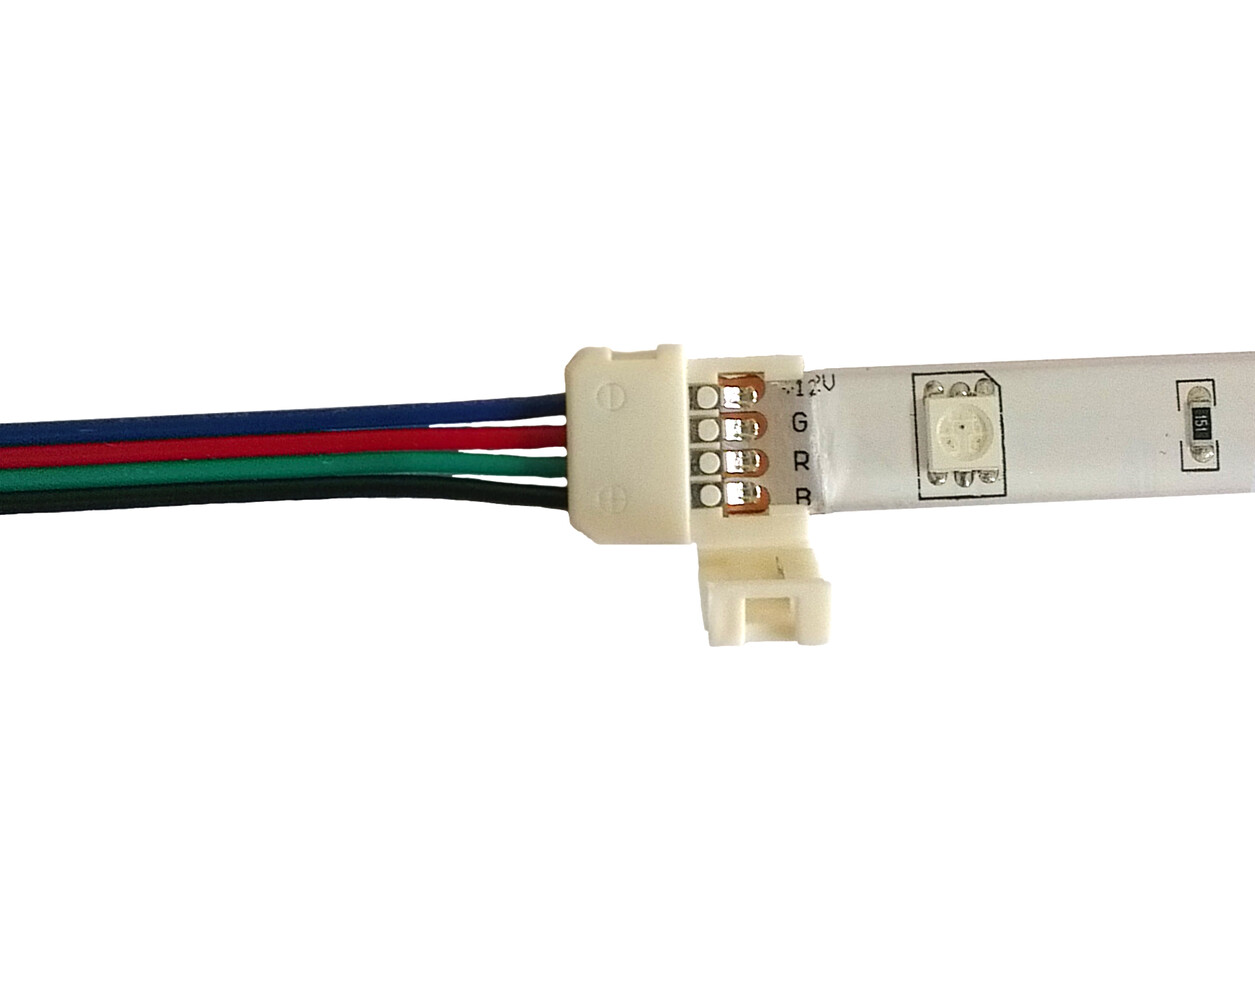 Hochwertiges LED Streifen Kabel von LED Universum mit Schnellverbinder und praktischer Klippbefestigung